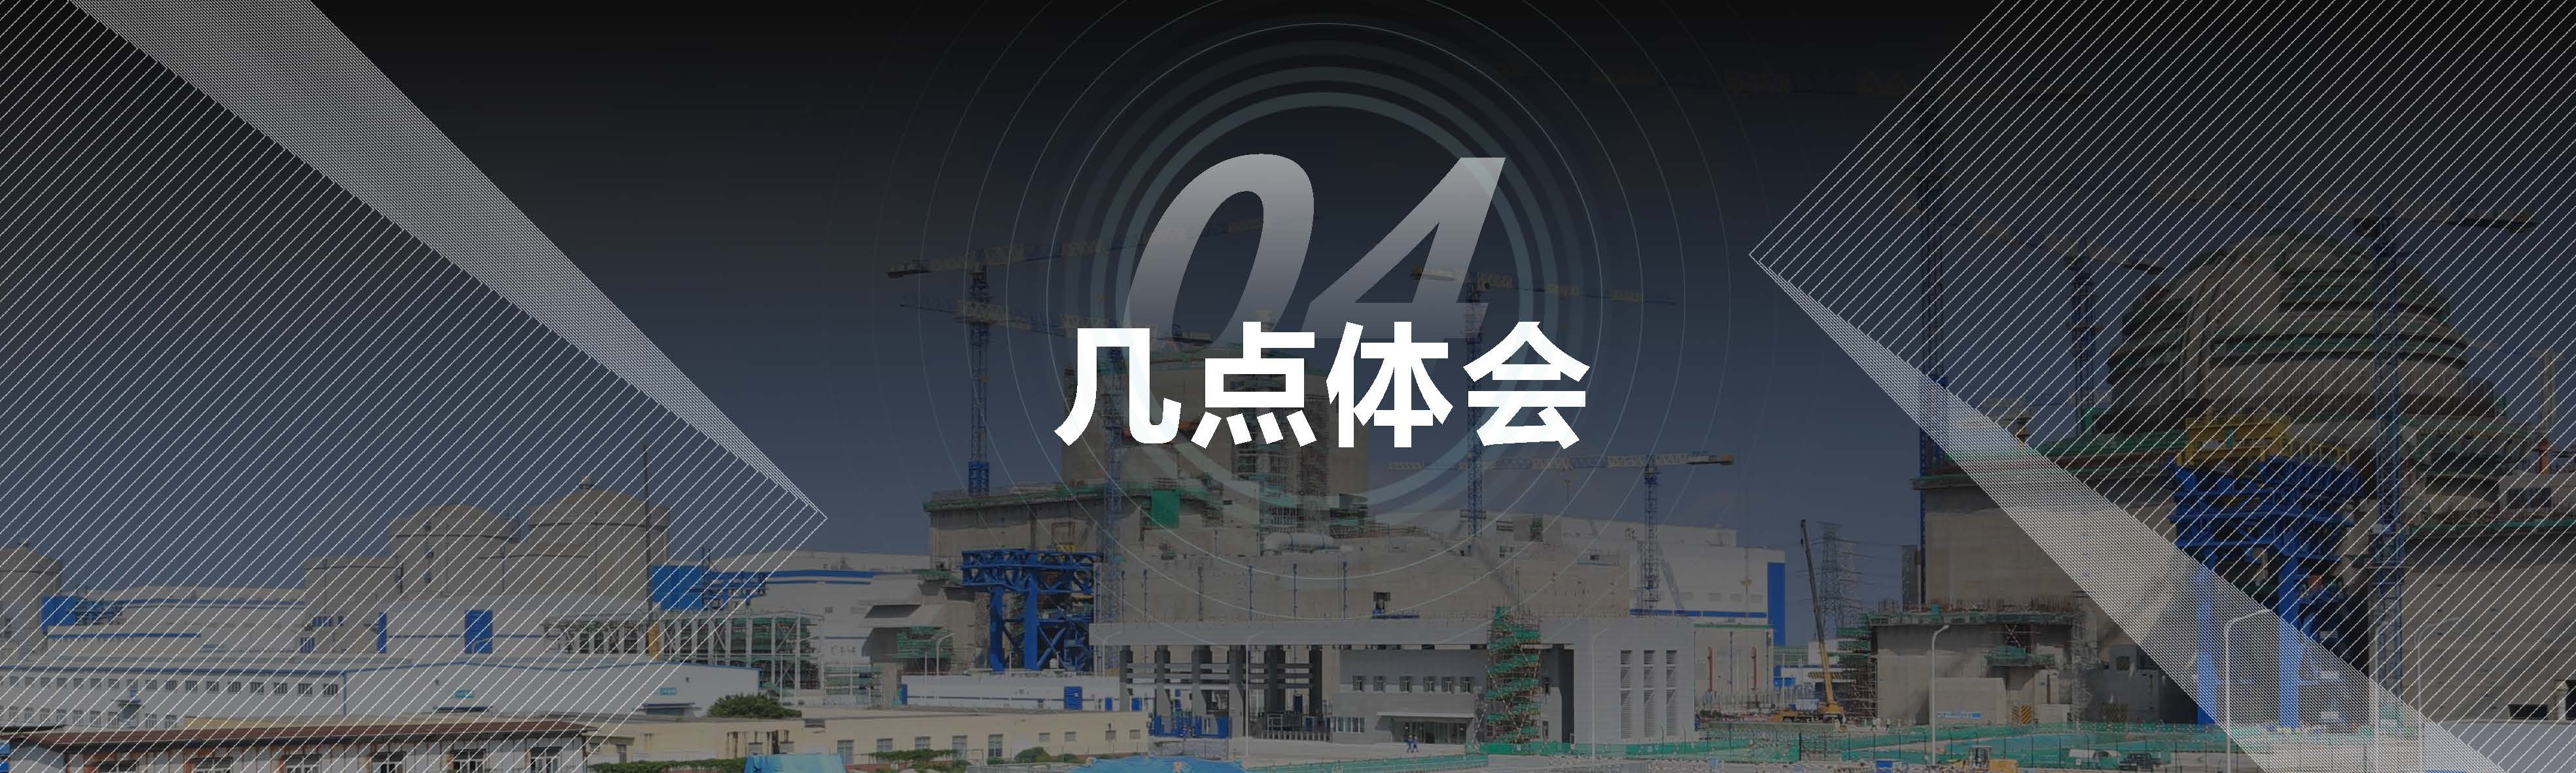 03 赵成昆 20201106核电建设同行评估与经验交流1.0 (1)_页面_22.jpg